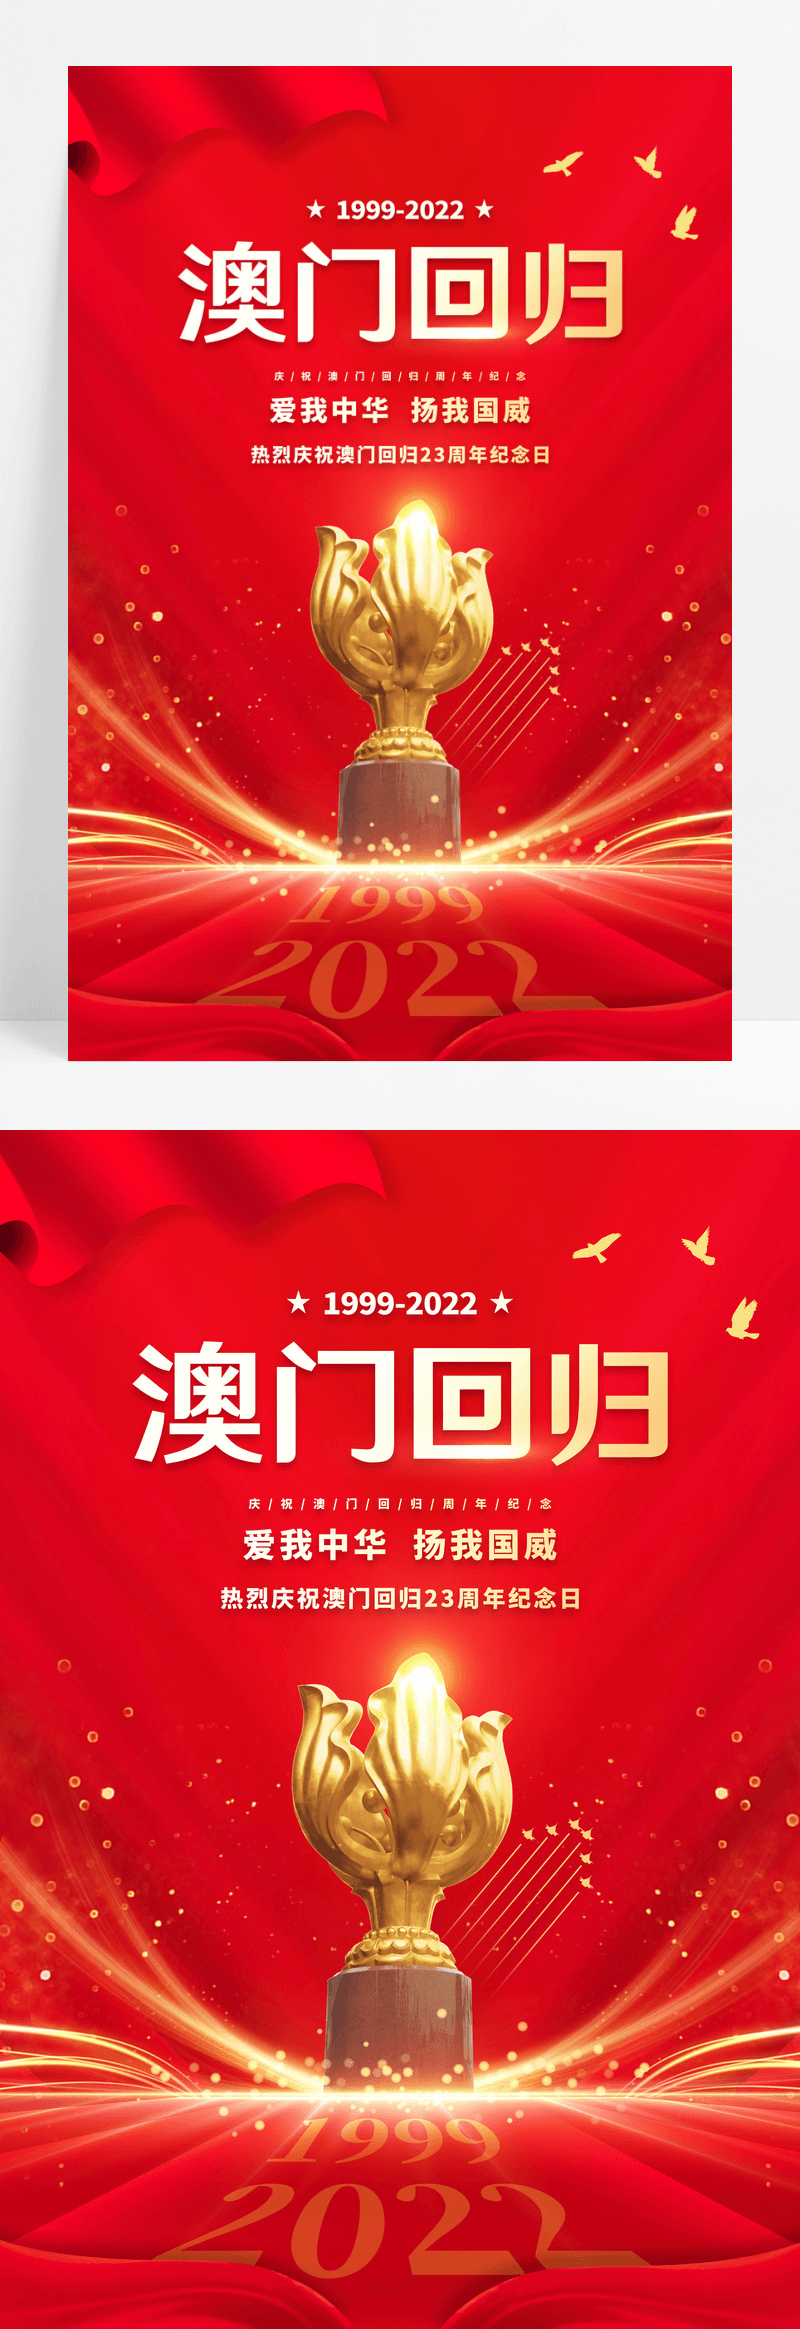 红色大气庆祝澳门回归23周年宣传海报澳门回归纪念日